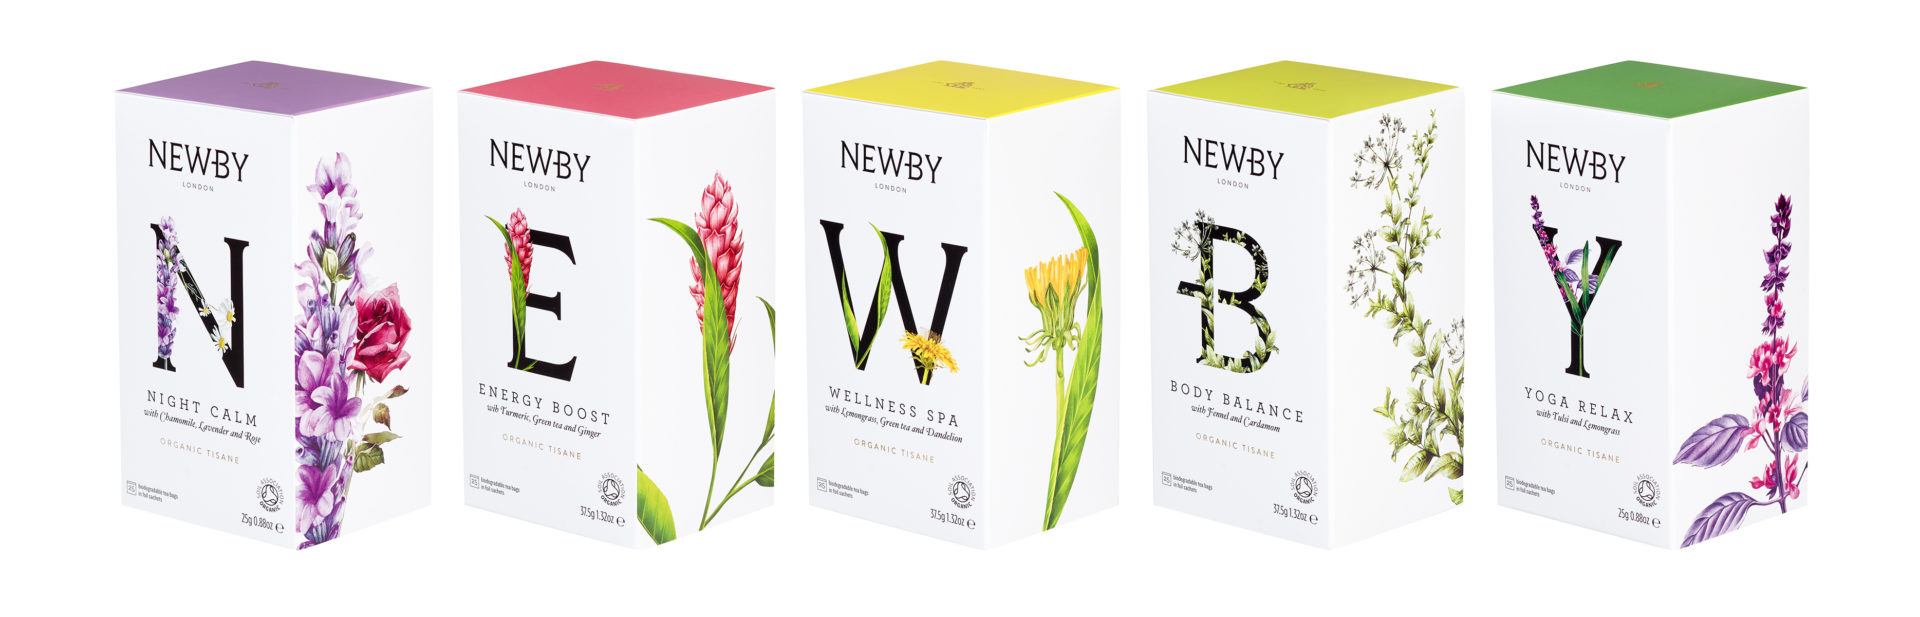 Newby Teas Wellness Collection Angle